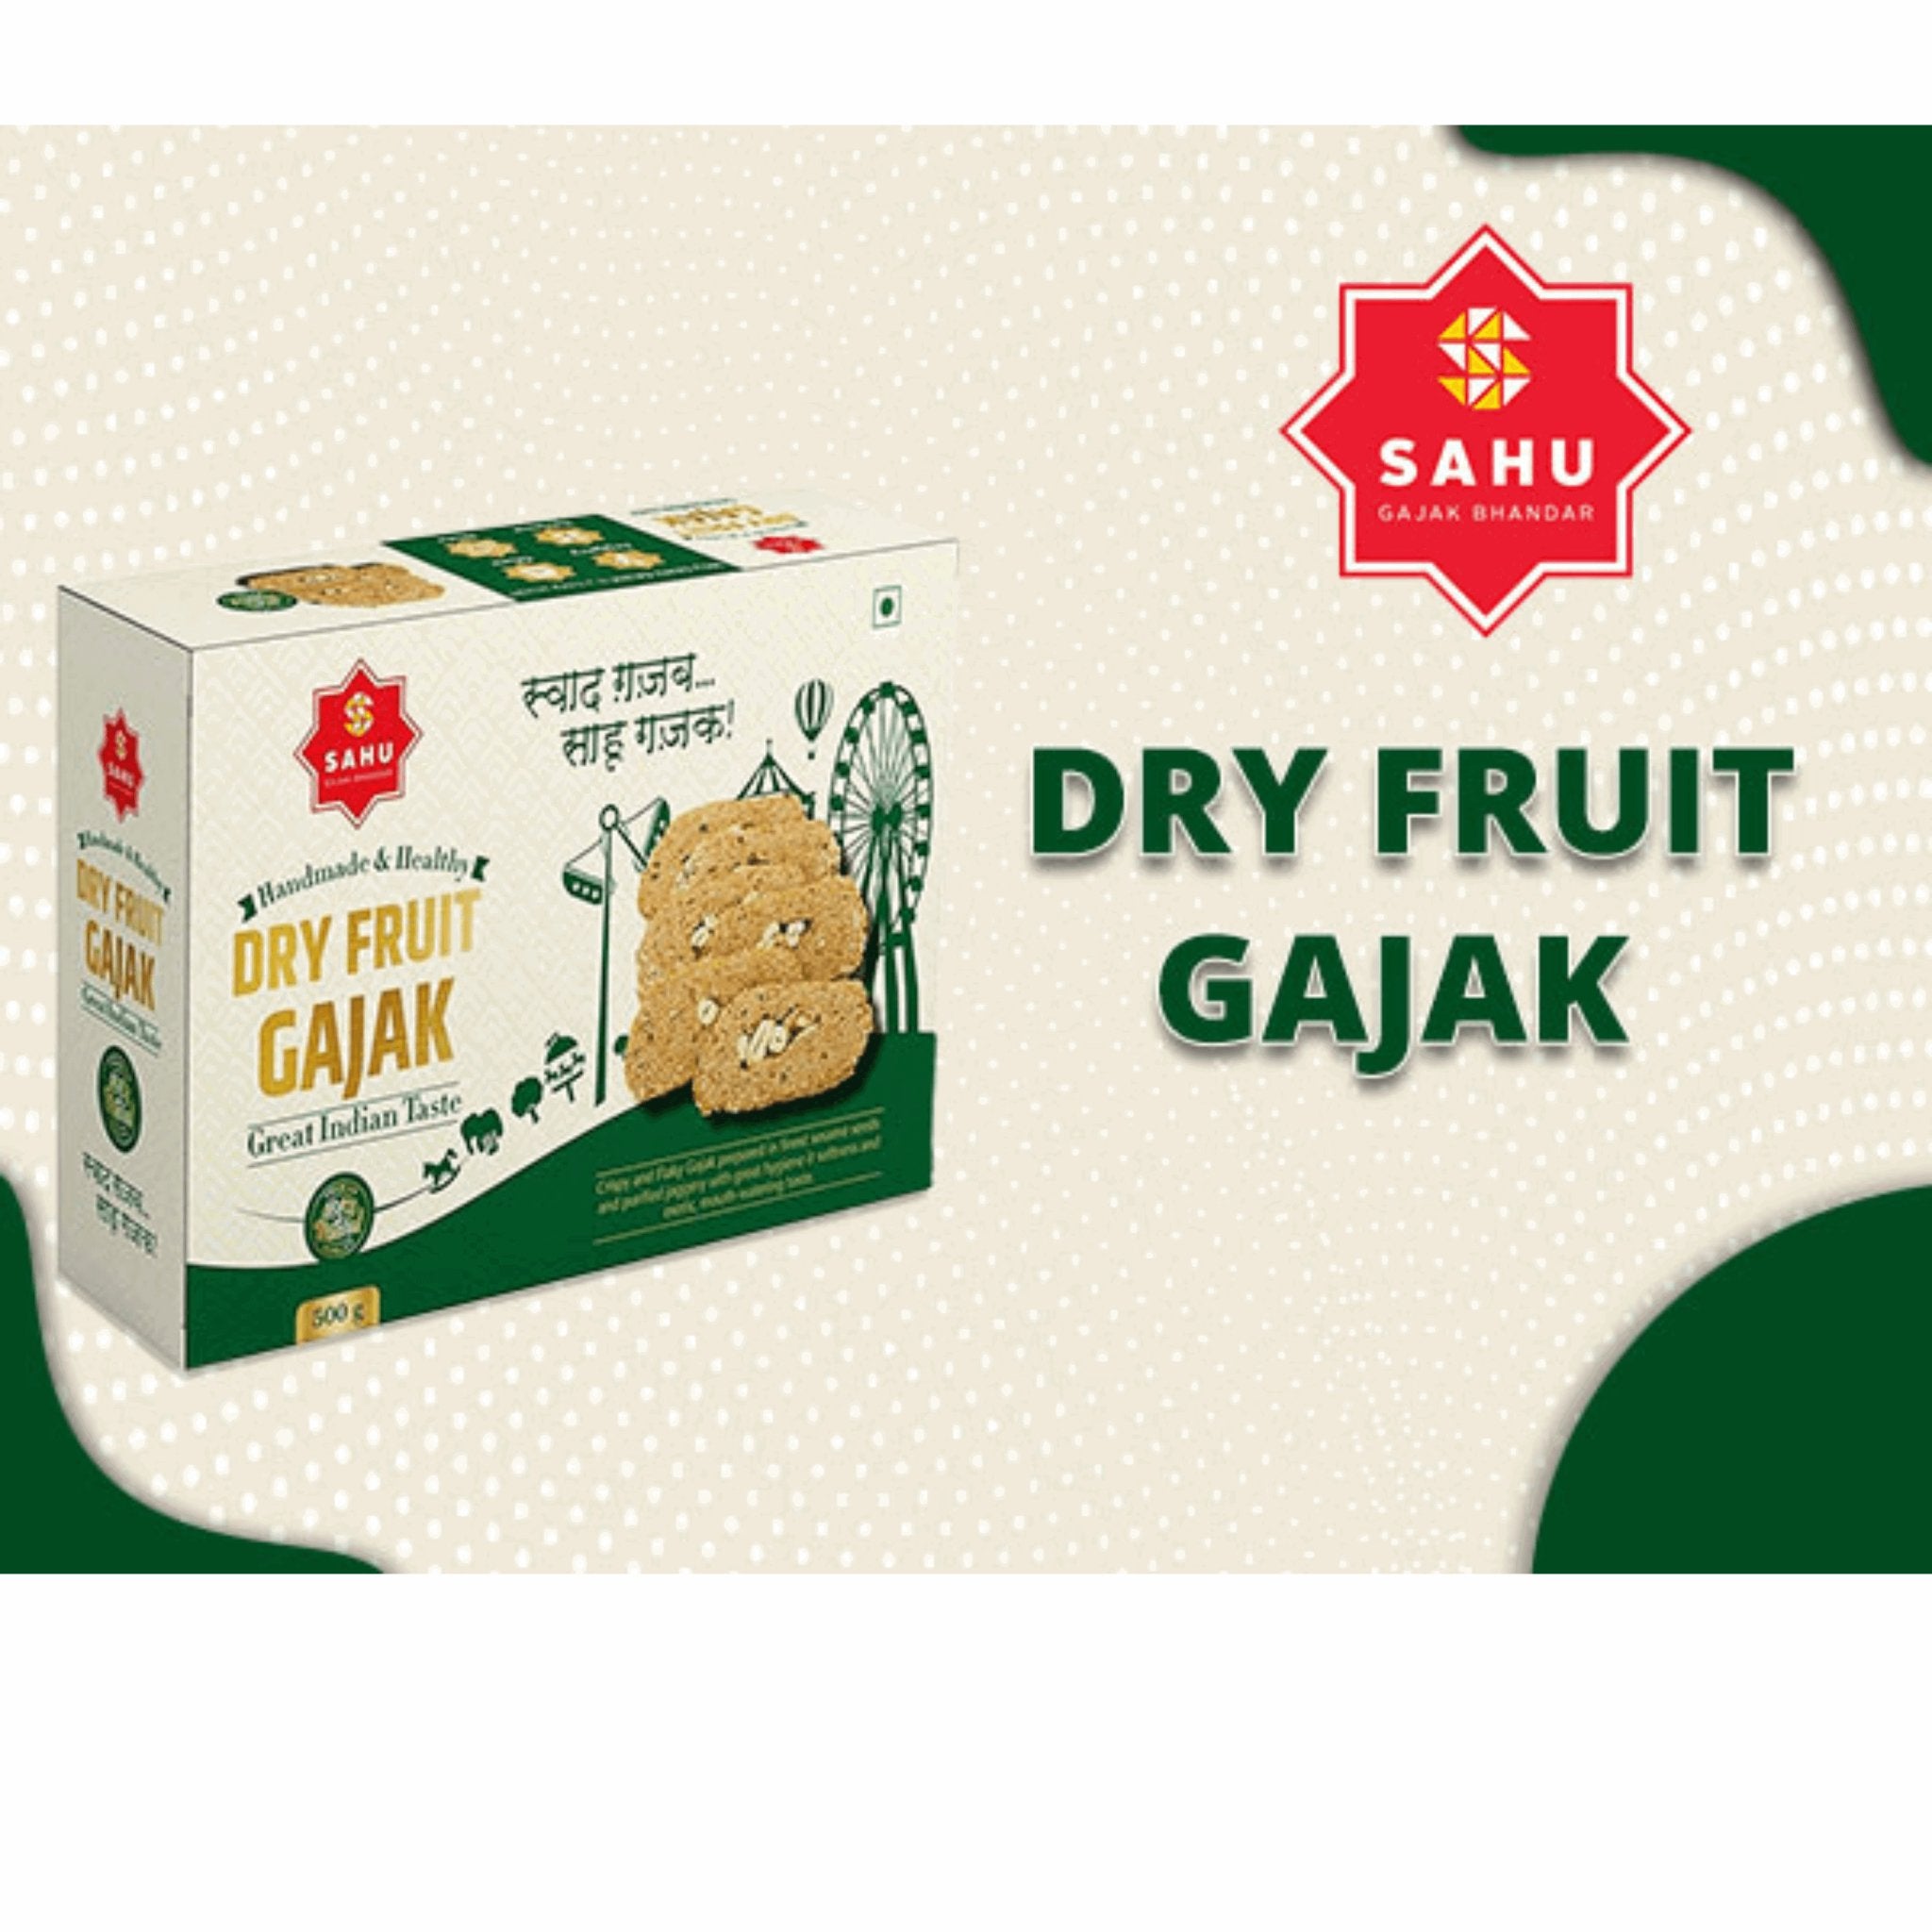 Dry Fruit Gajak 500 Gram Sahu Gajak Bhandar